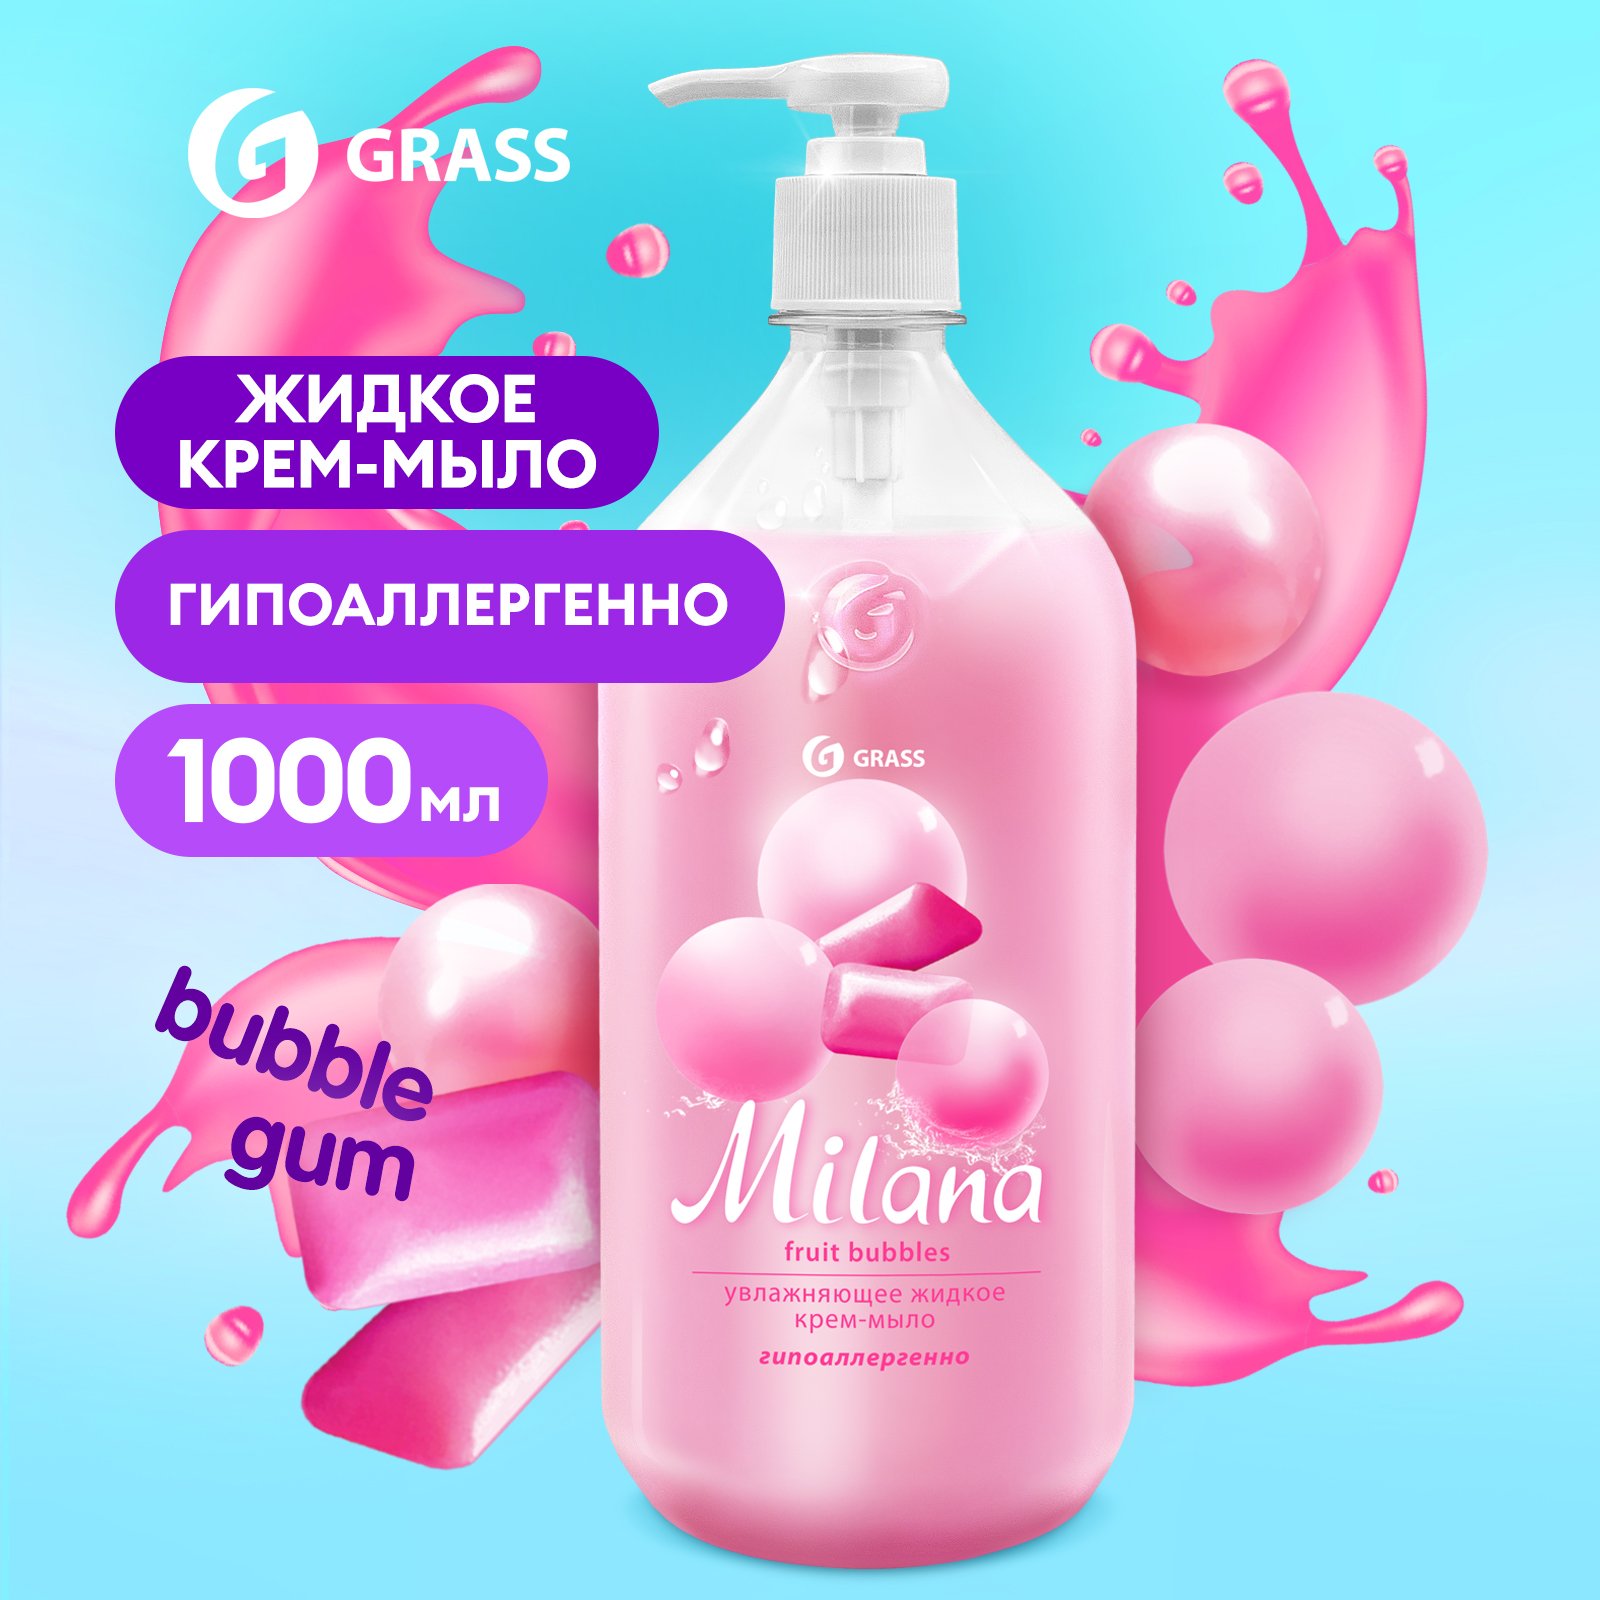 Мыло жидкое для рук Grass Milana Fruit Bubbles туалетное, густое, гипоаллергенное 1 л